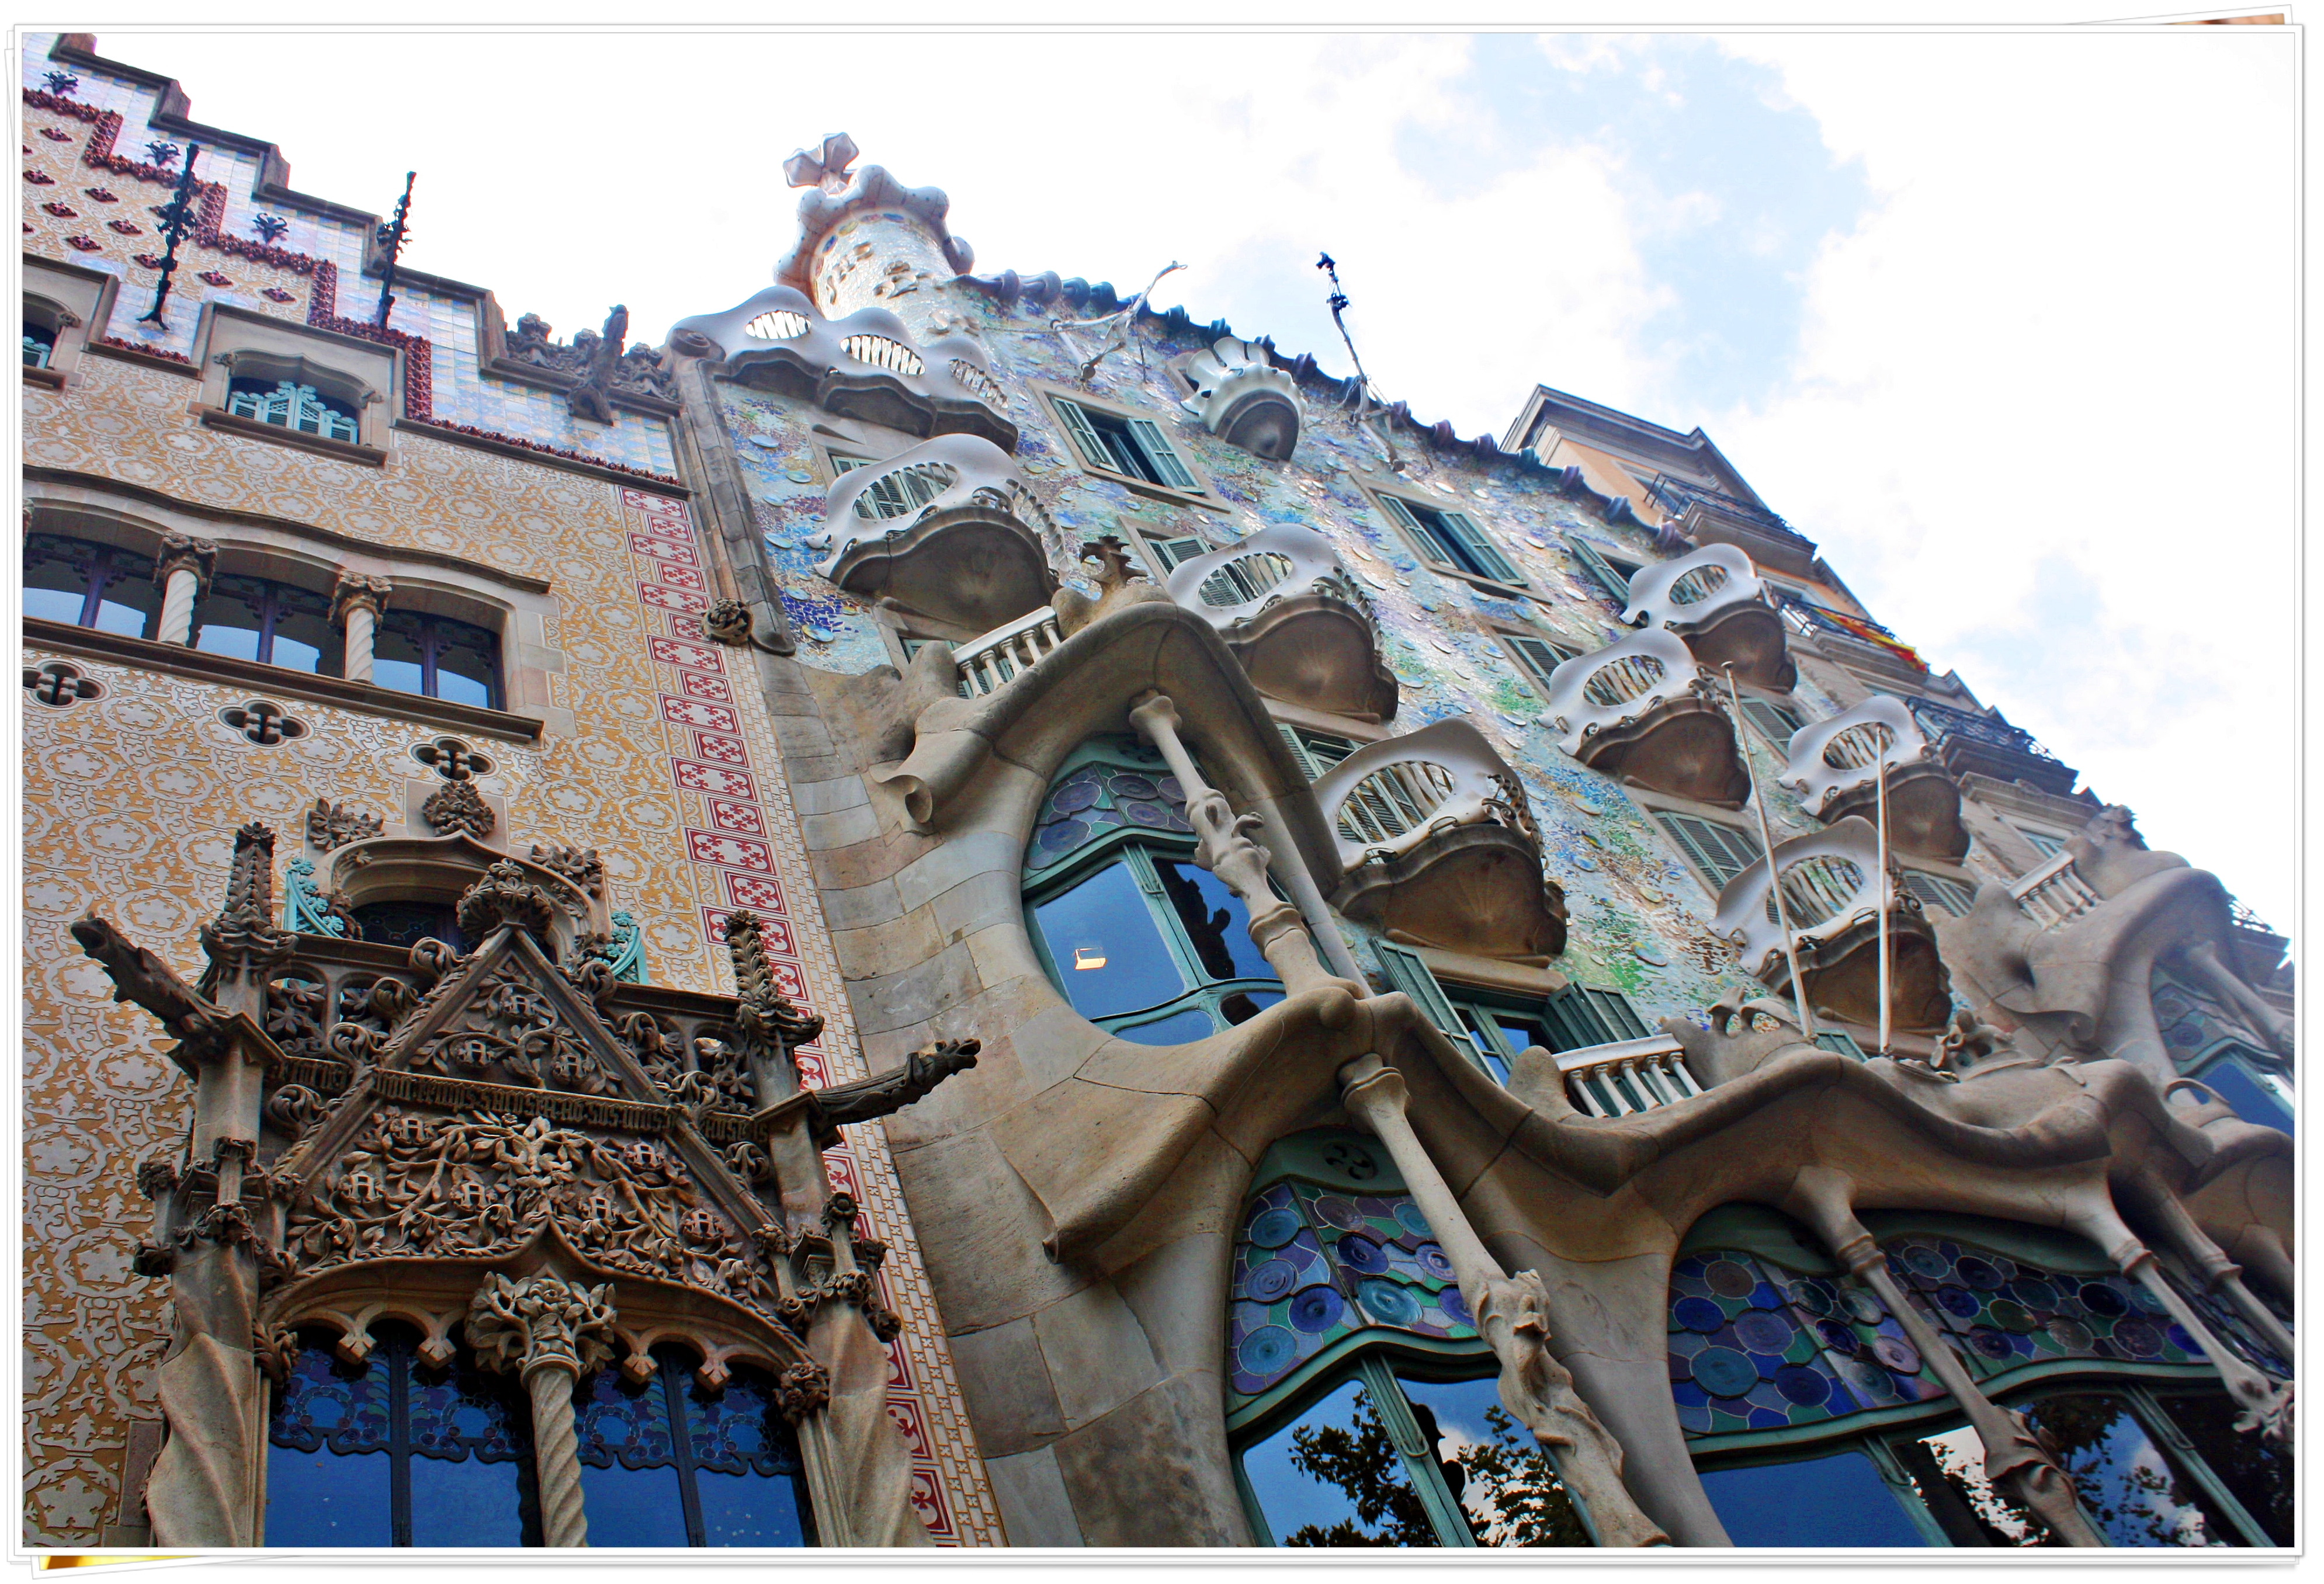 Casa Batlló - Barcelona, Spain 2013